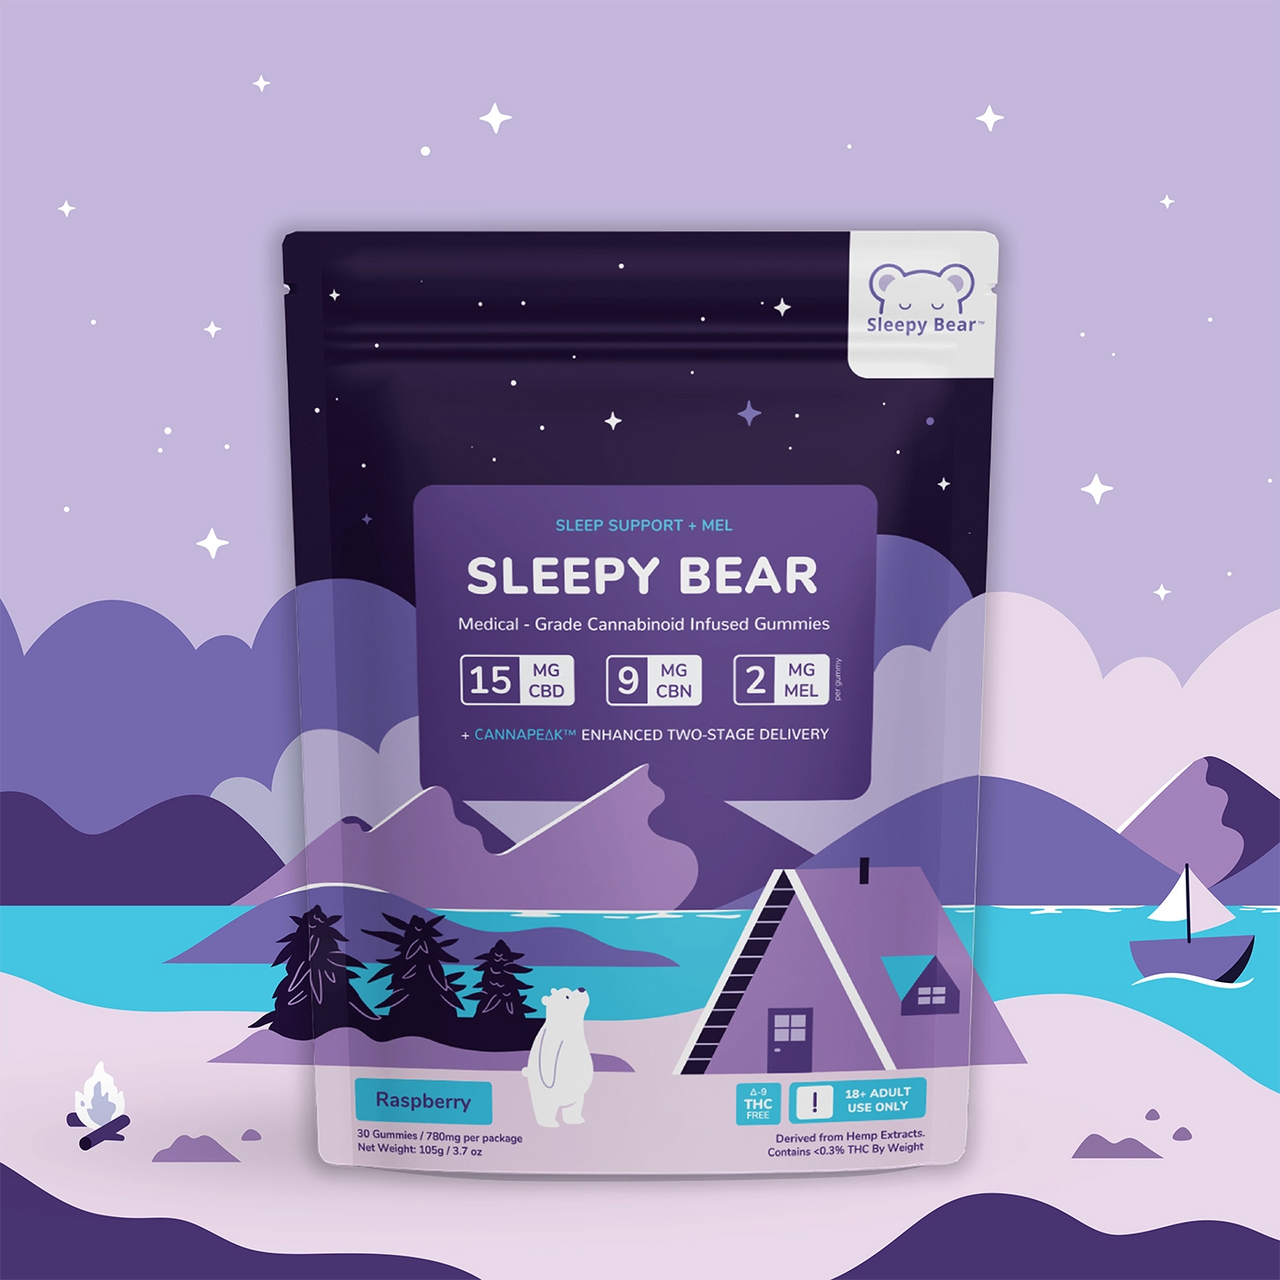 Sleepy Bear (CBD/CBN/Melatonin) - Sleep Support